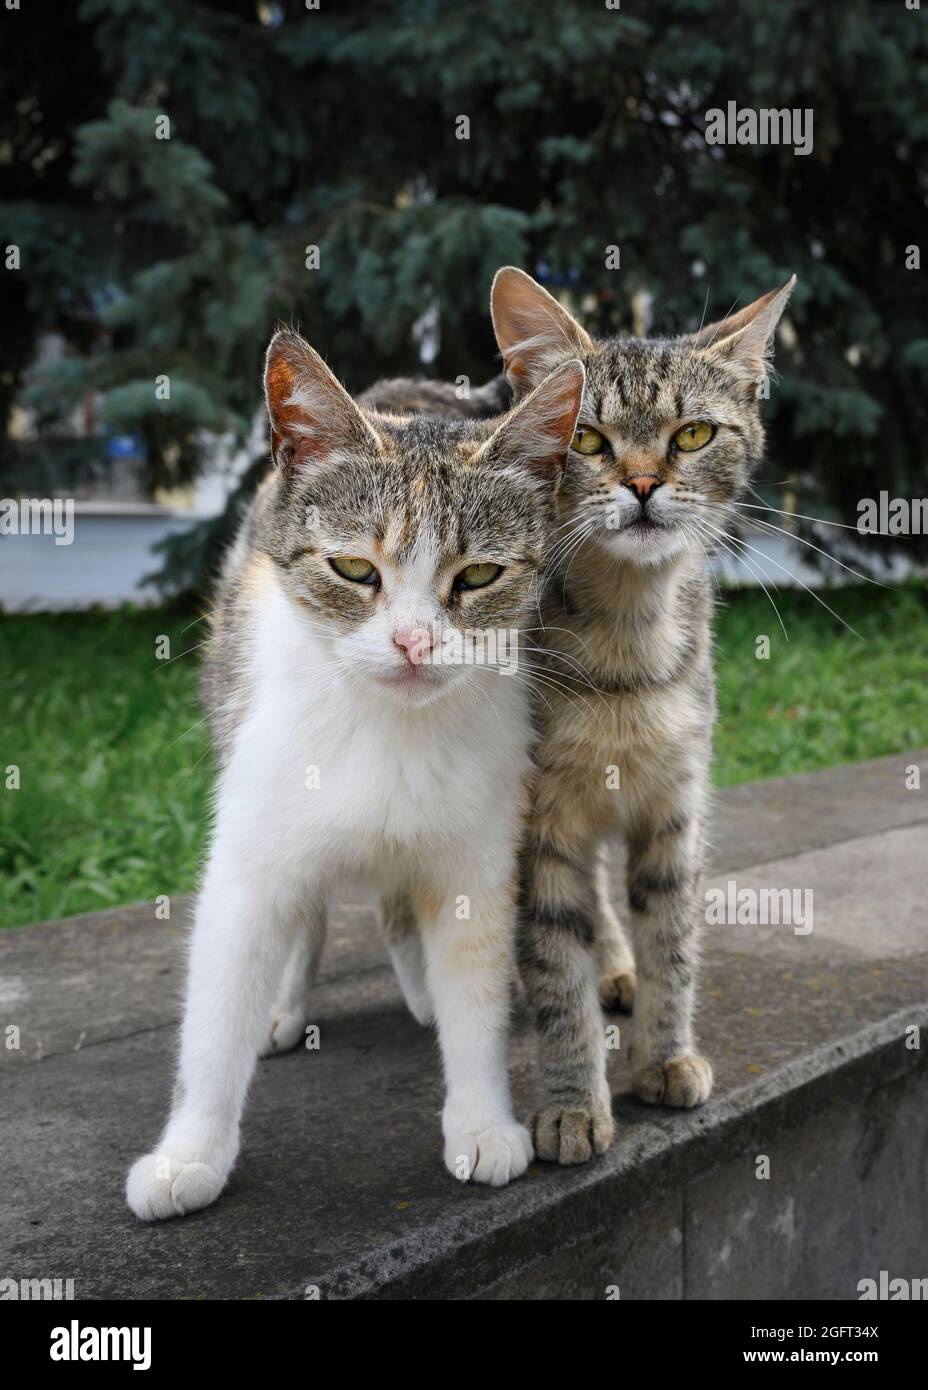 Deux frères chaton errants se sont accroches l'un à l'autre. Ils regardent directement dans les yeux avec désespoir et défi Banque D'Images